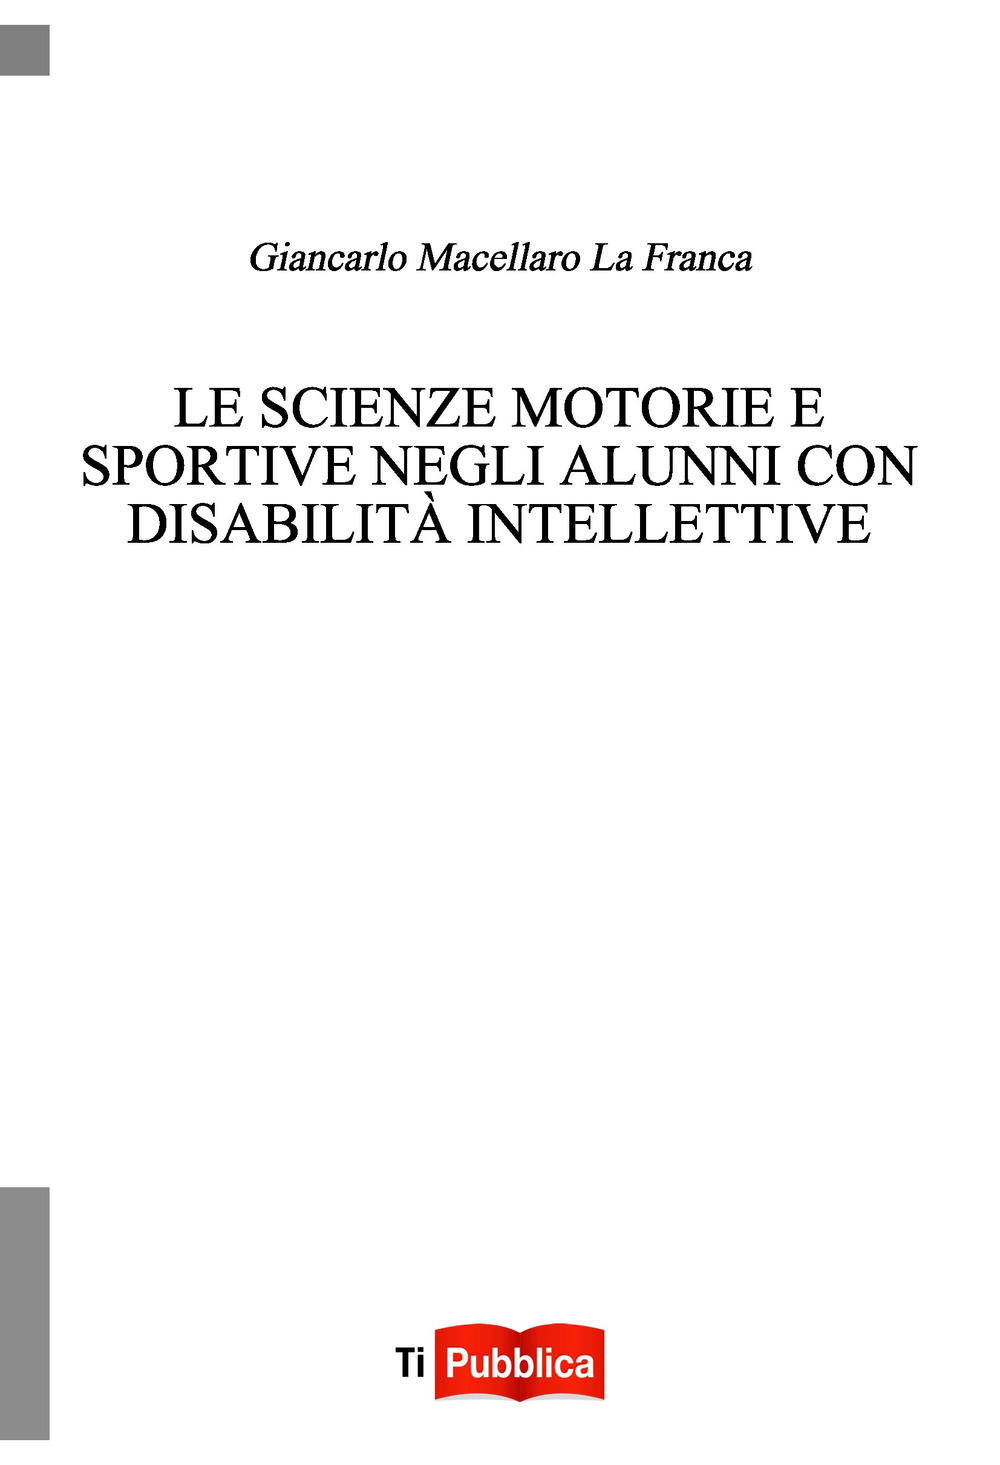 Image of Le scienze motorie e sportive negli alunni con disabilità intellettive